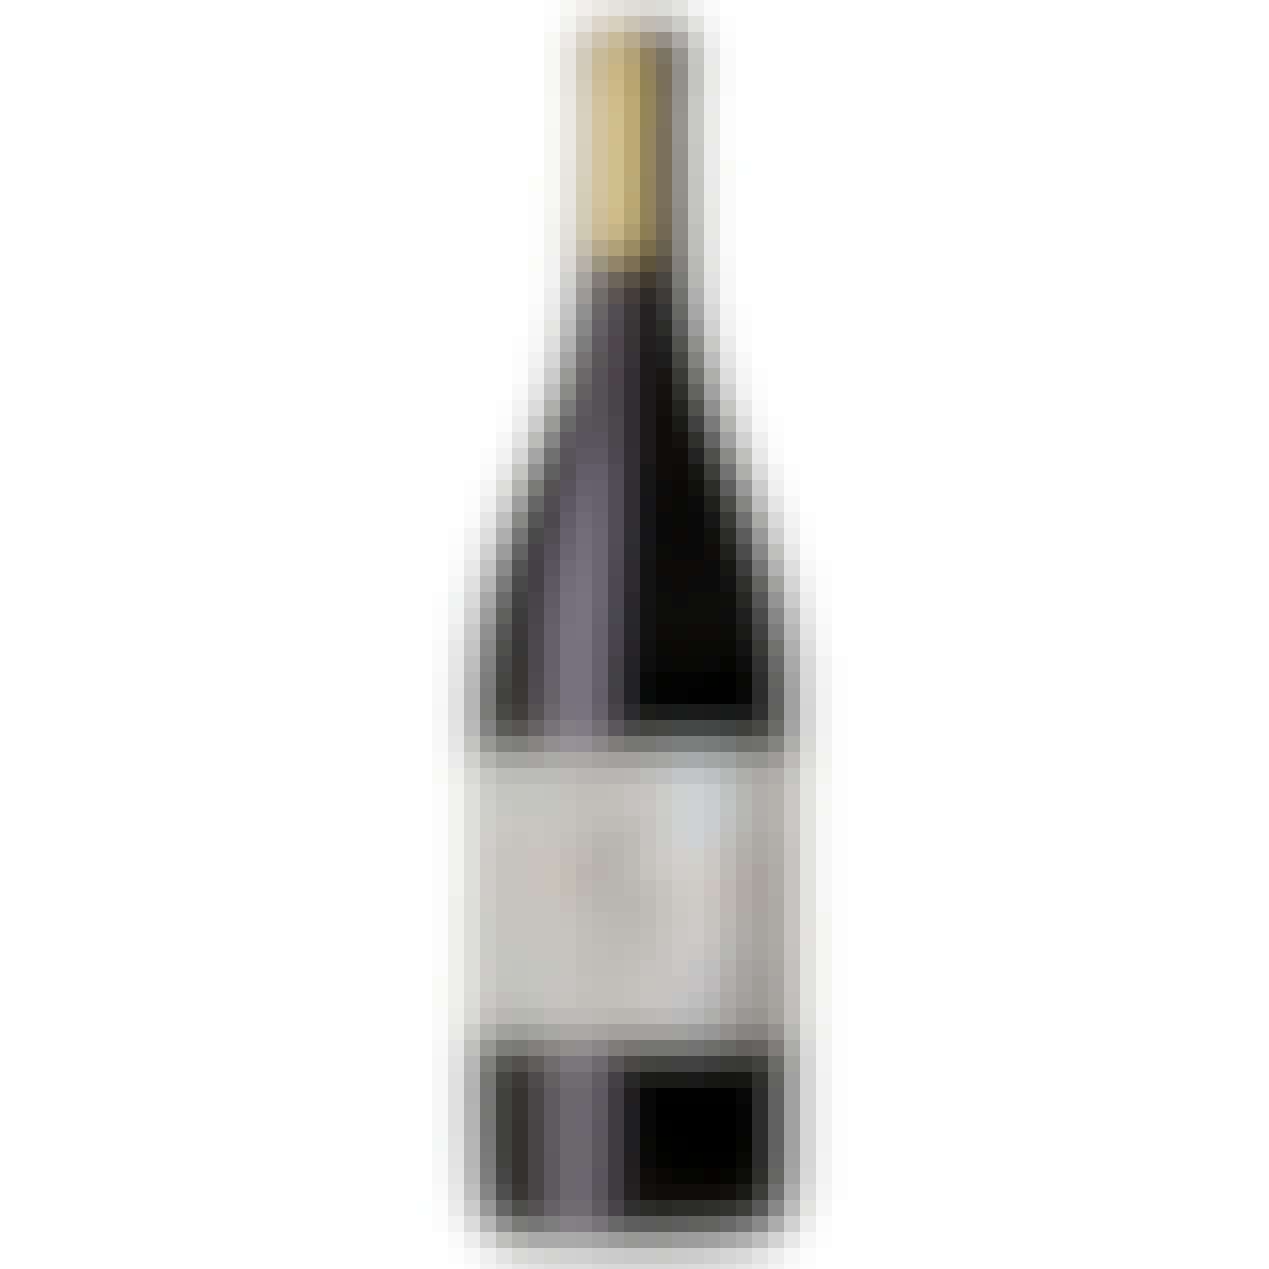 Annabella Russian River Valley Pinot Noir 2020 750ml